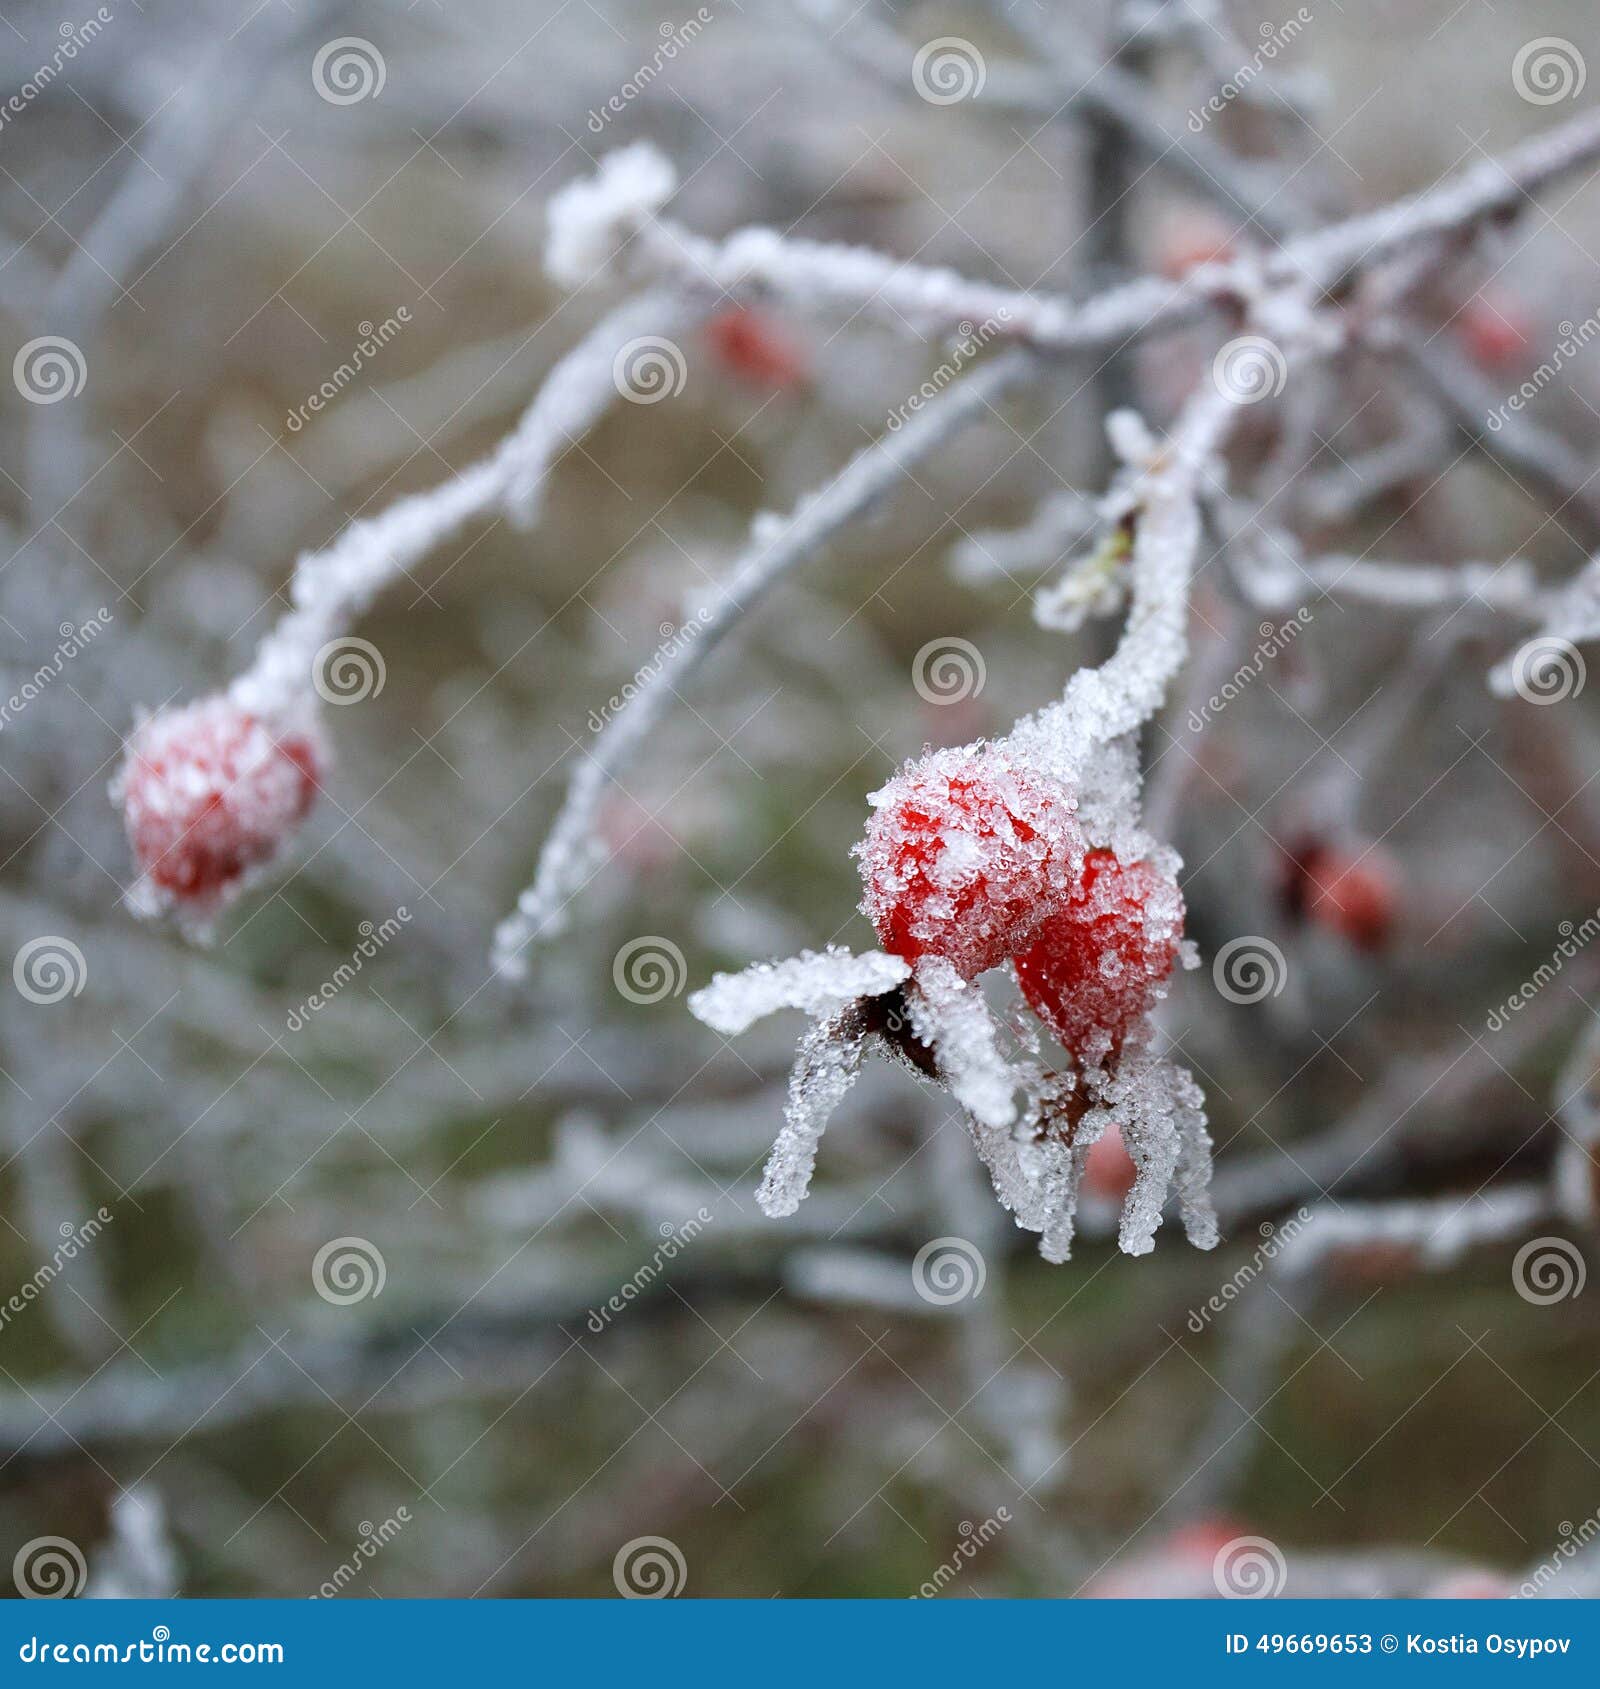 Rose-hip μούρα που καλύπτονται με κρύσταλλα ενός τα παγωμένα πάγου, υπόβαθρο χειμερινής φύσης